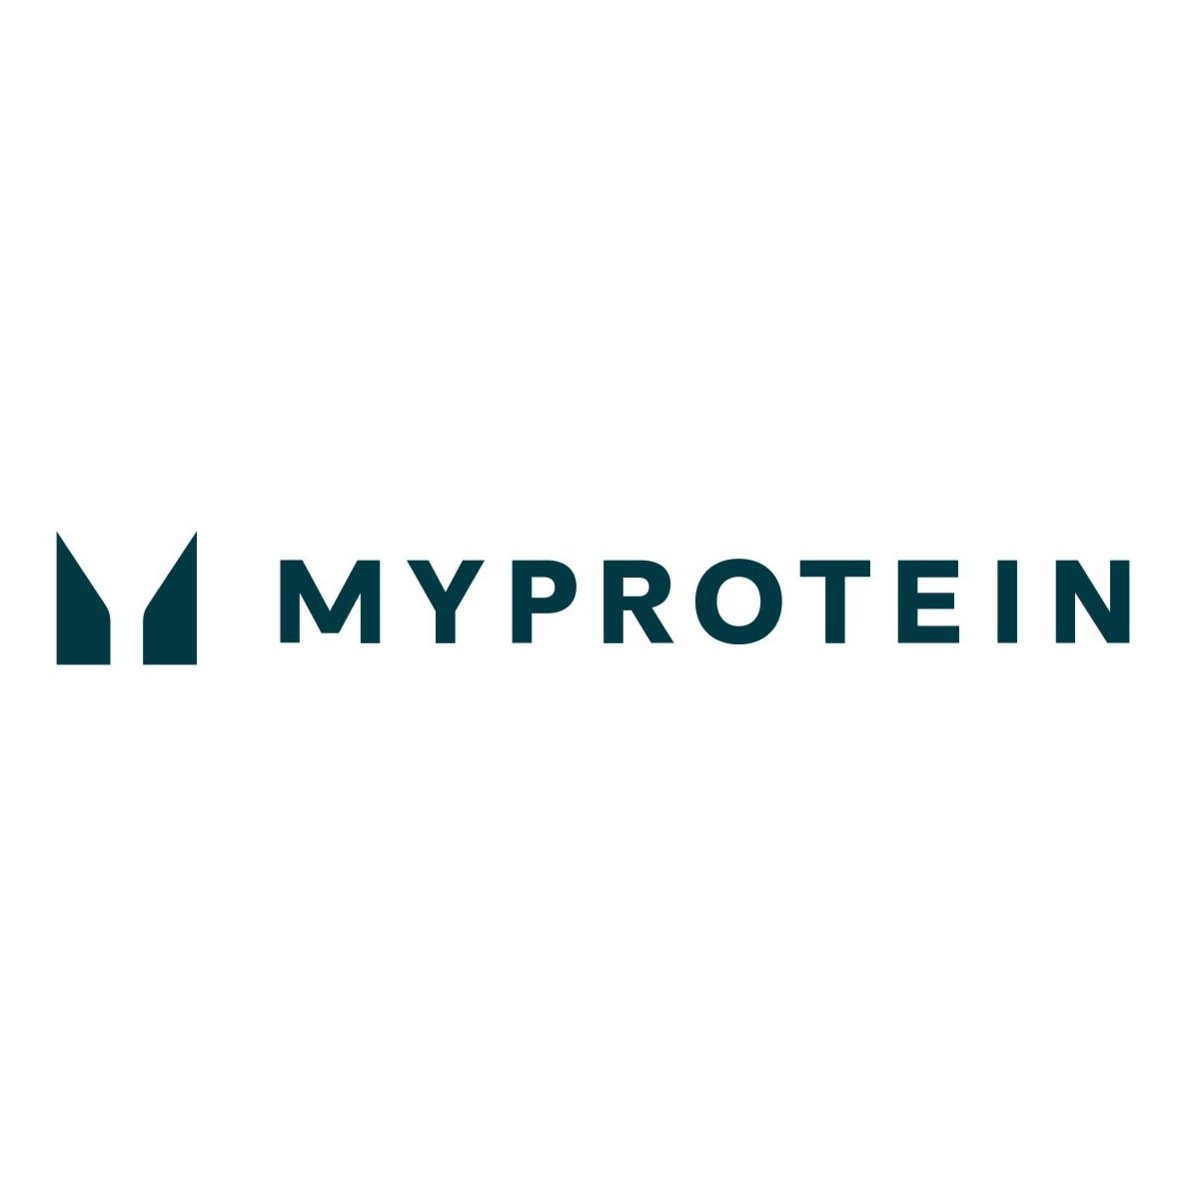 (c) Myprotein.com